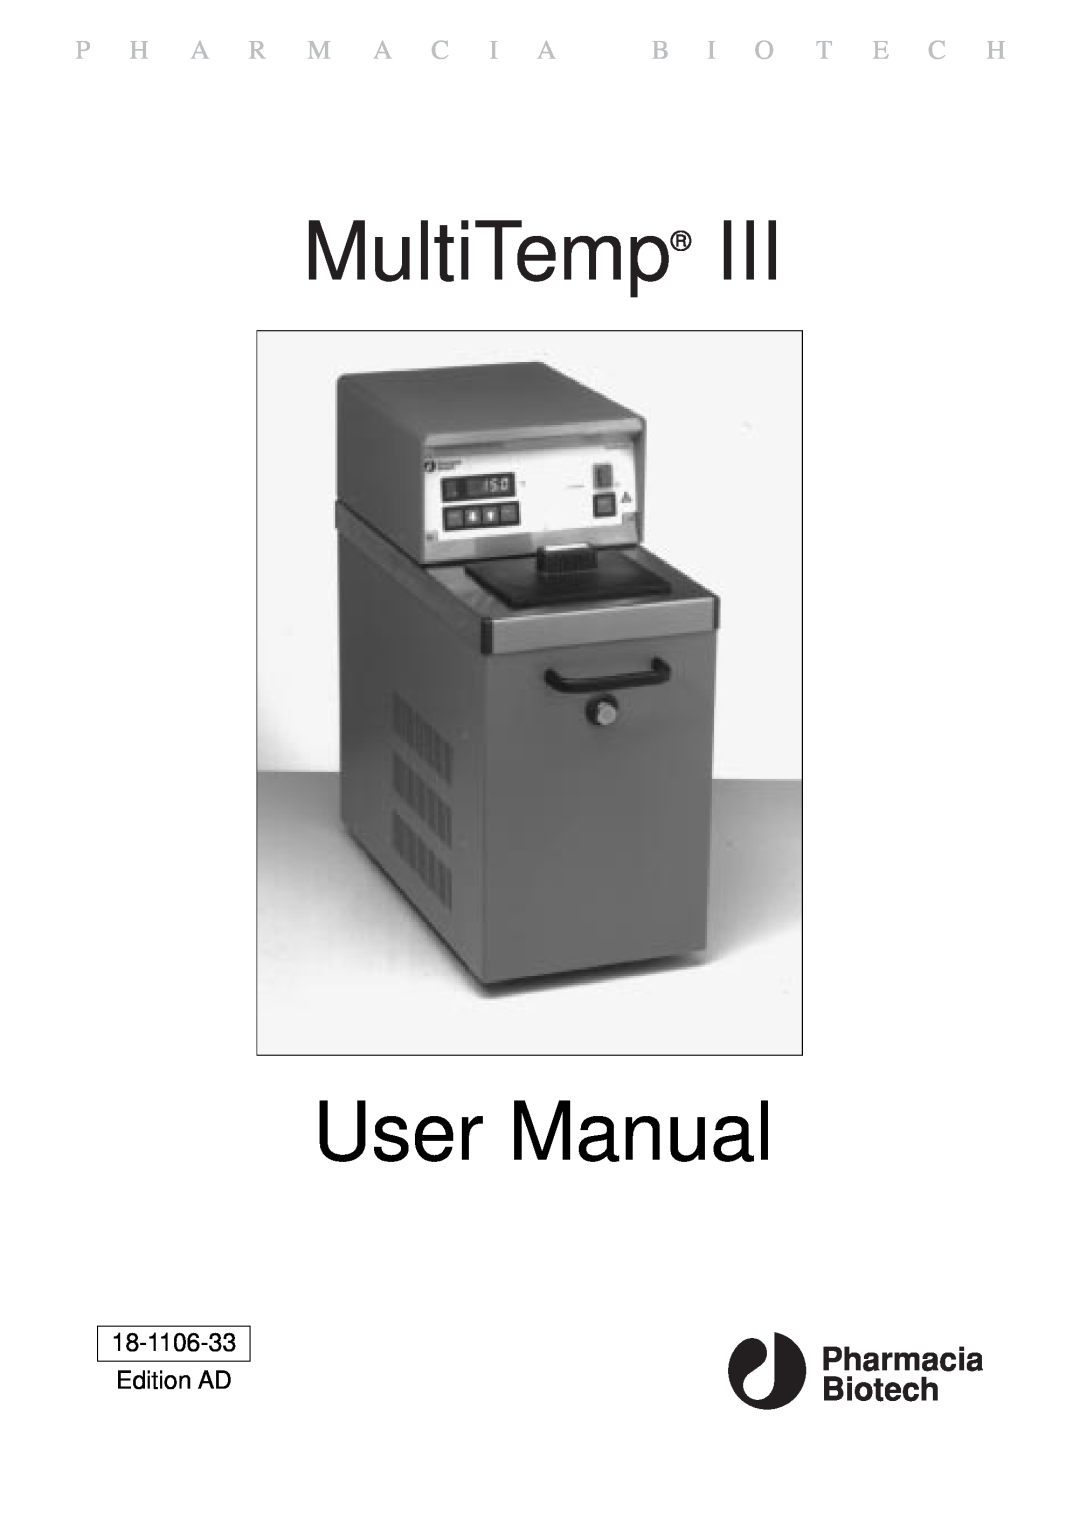 TRENDnet 18-1106-33 user manual MultiTemp User Manual, P H A R M A C I A B I O T E C H, Edition AD 